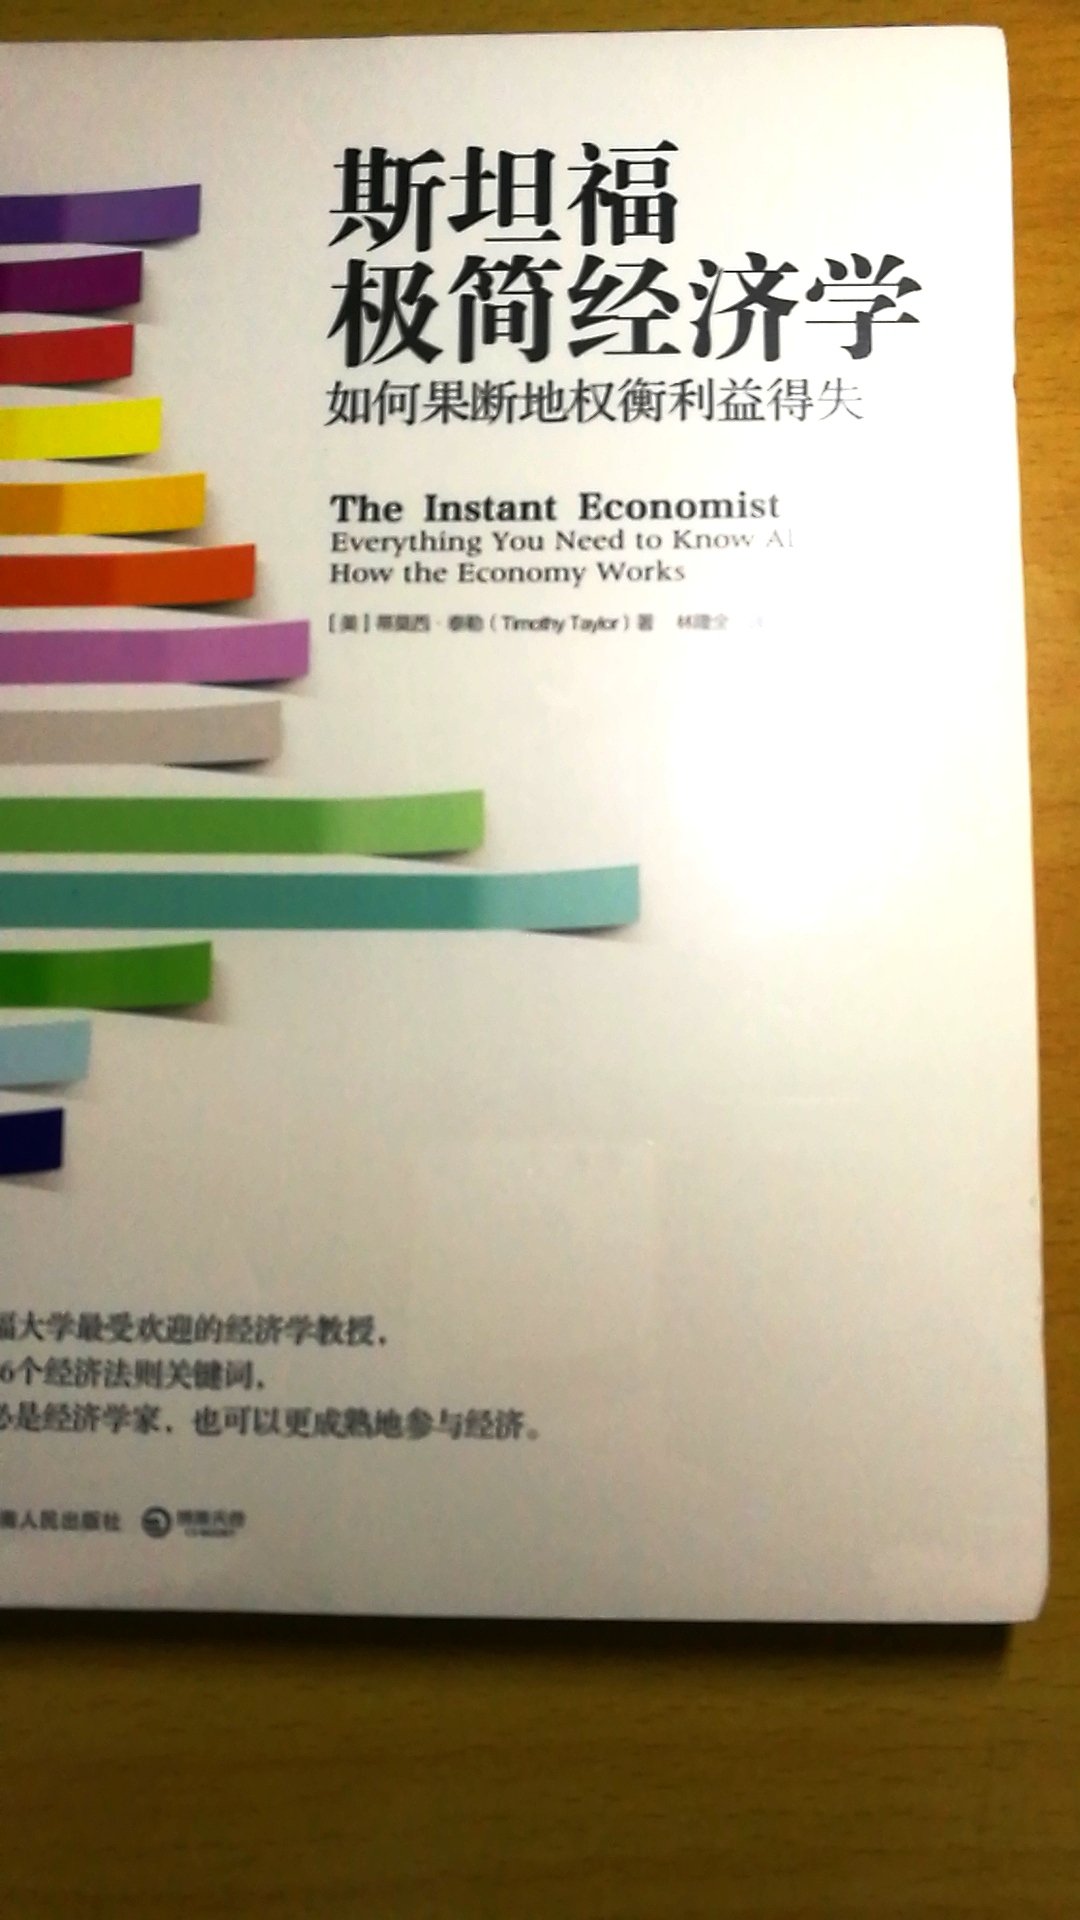 这本书读过，写的很好，经济学思维方式重要